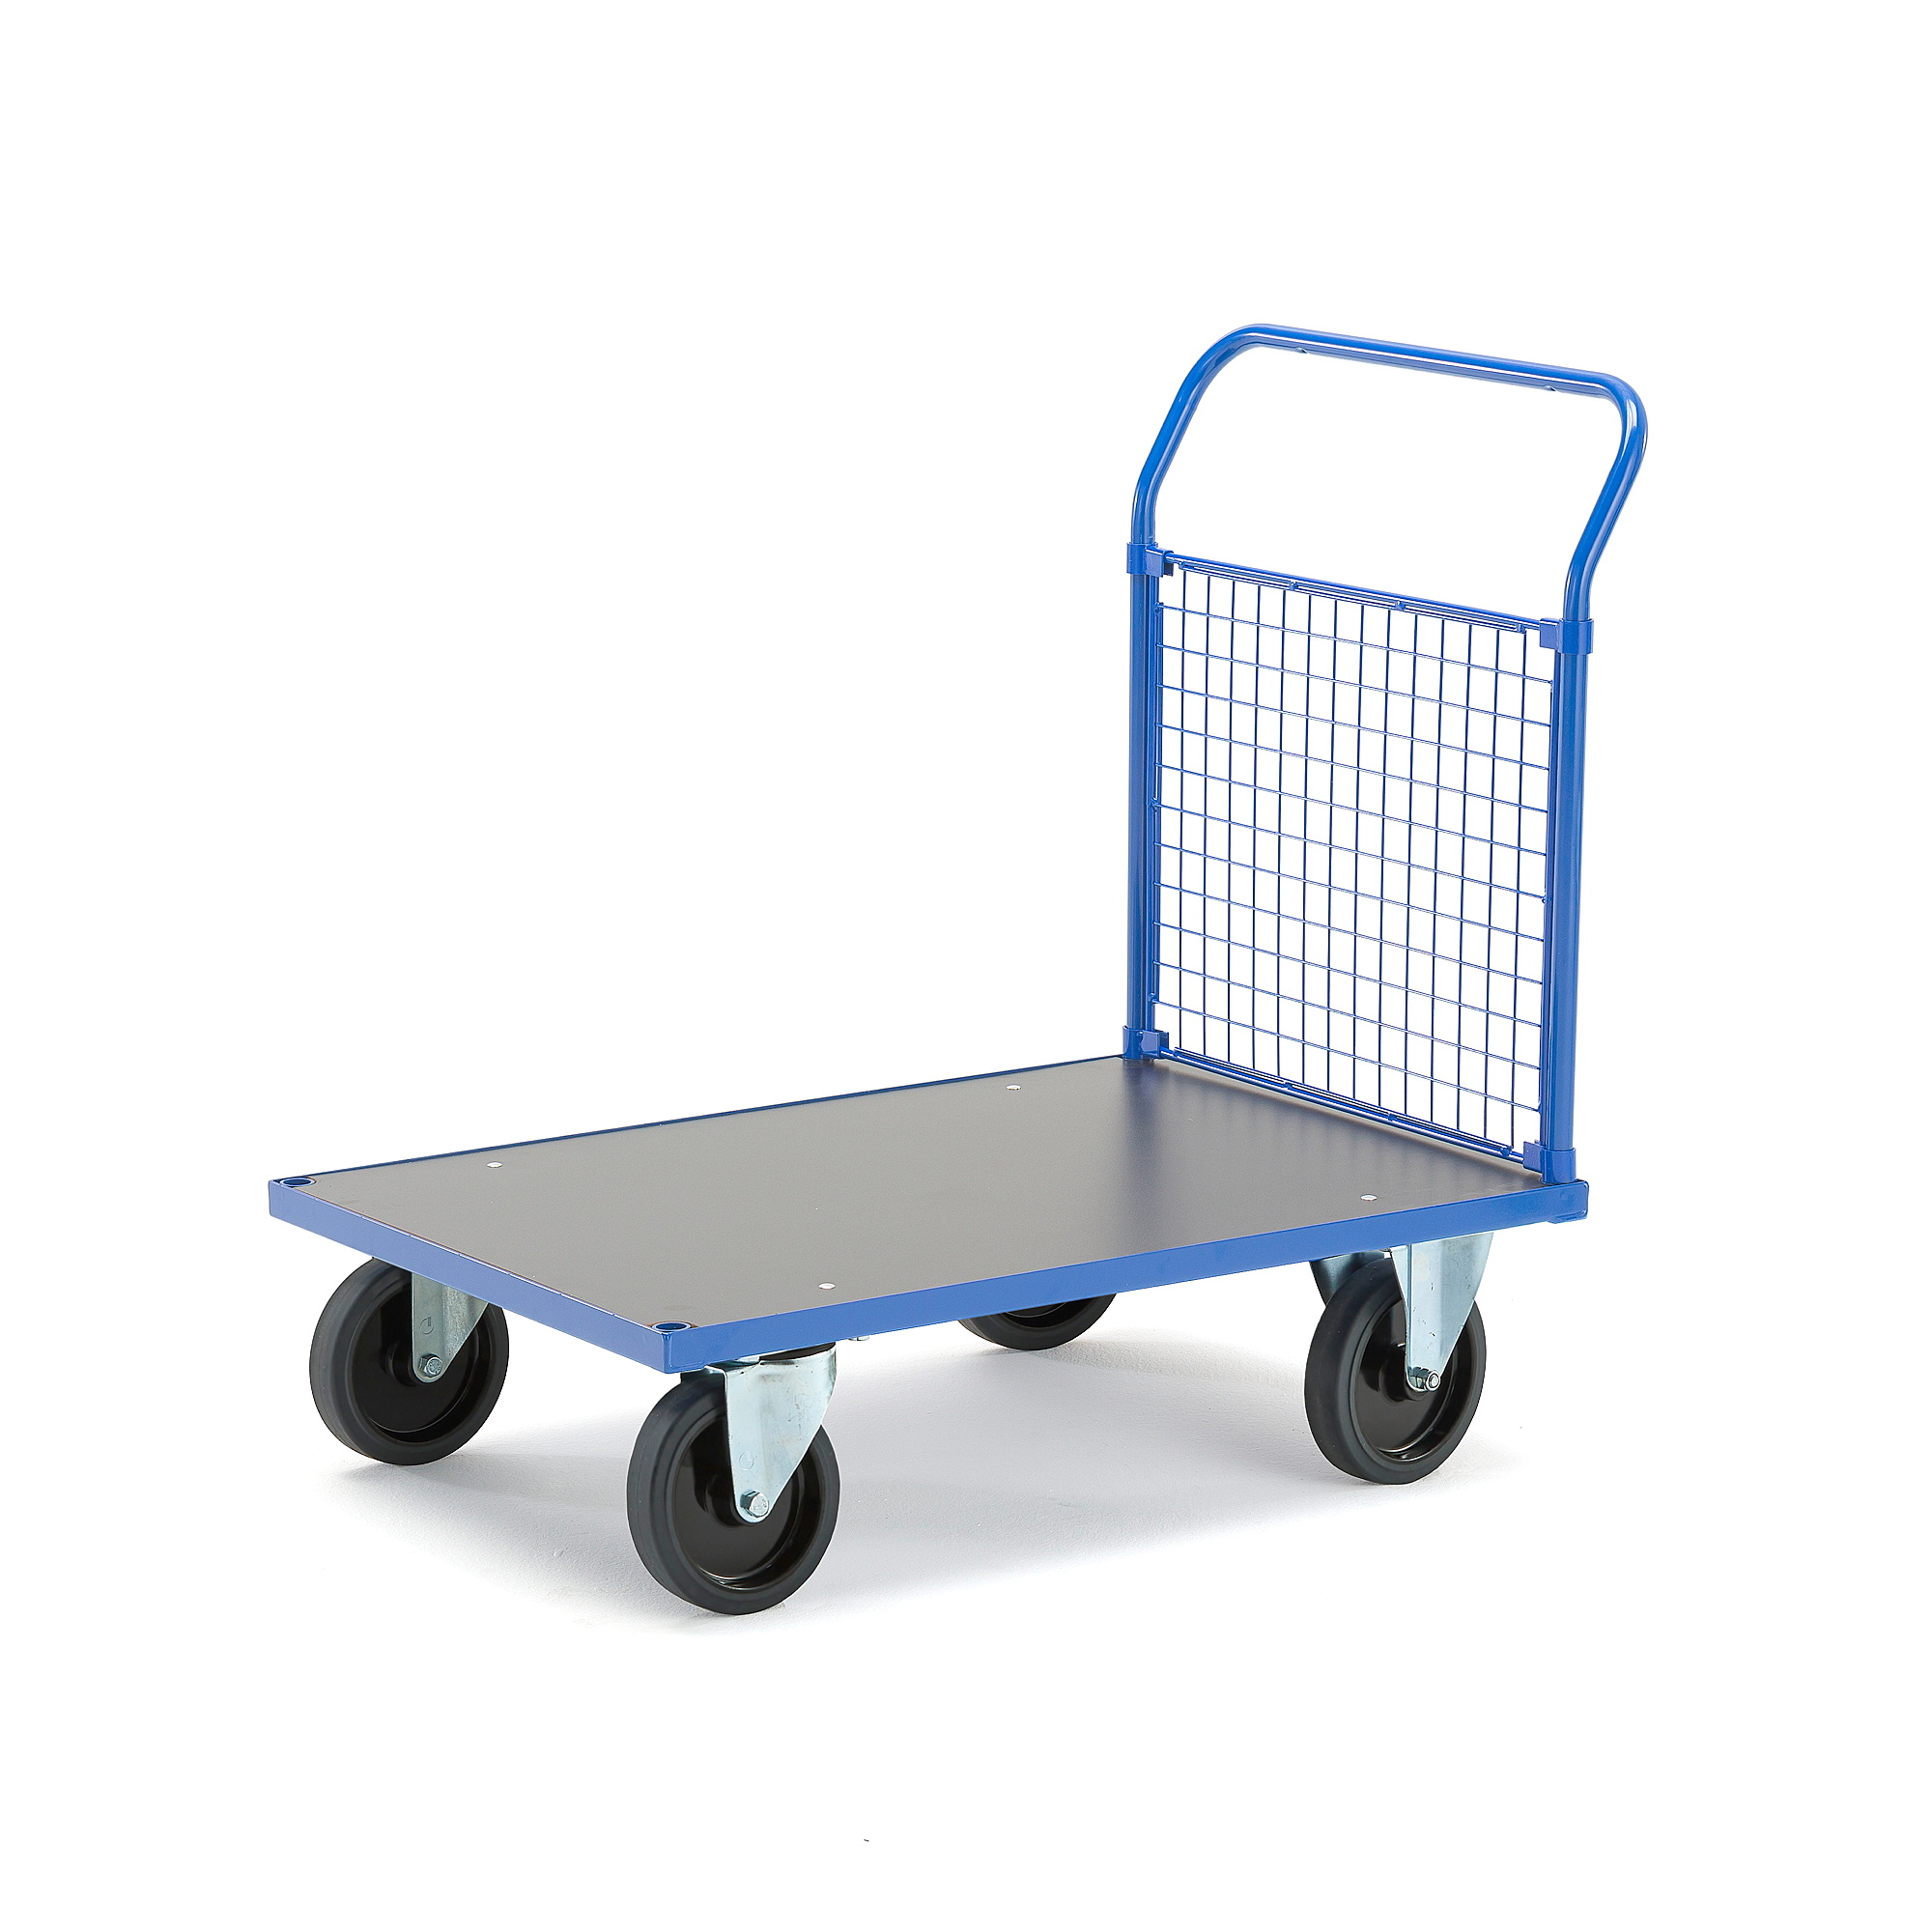 Plošinový vozík TRANSFER, 1 čelní drátěná stěna, 1000x700 mm, 1000 kg, elastická gumová kola, bez br